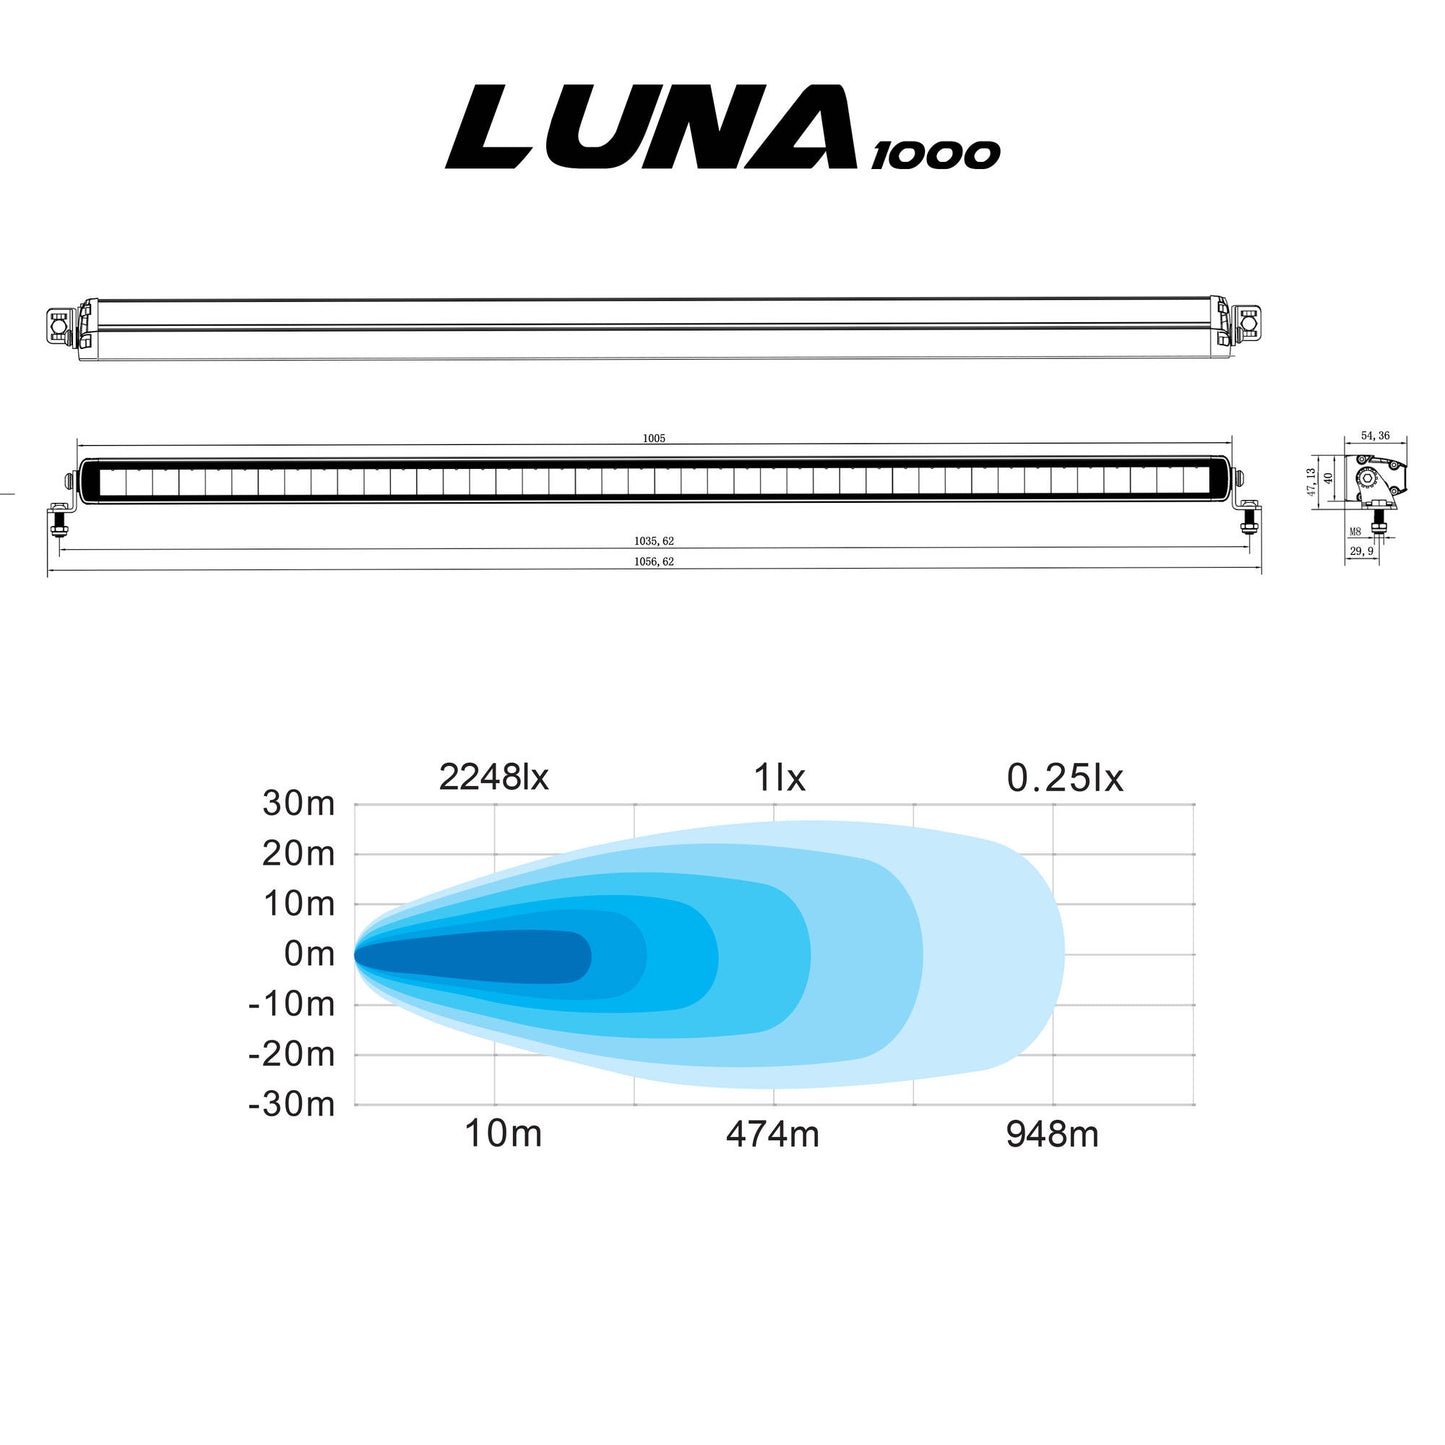 ISO JA LEVEÄ: Lisävalo Walonia Luna 1000 98W Ref. 50